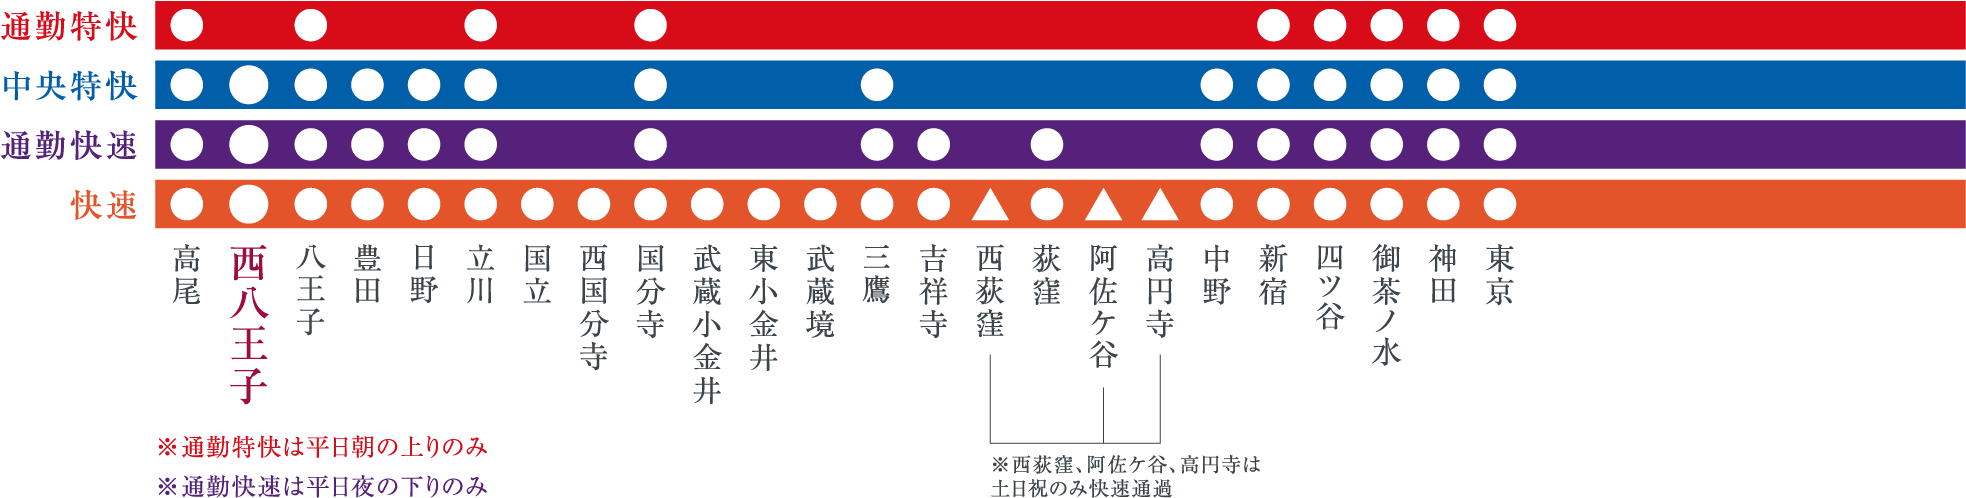 JR中央線 路線図